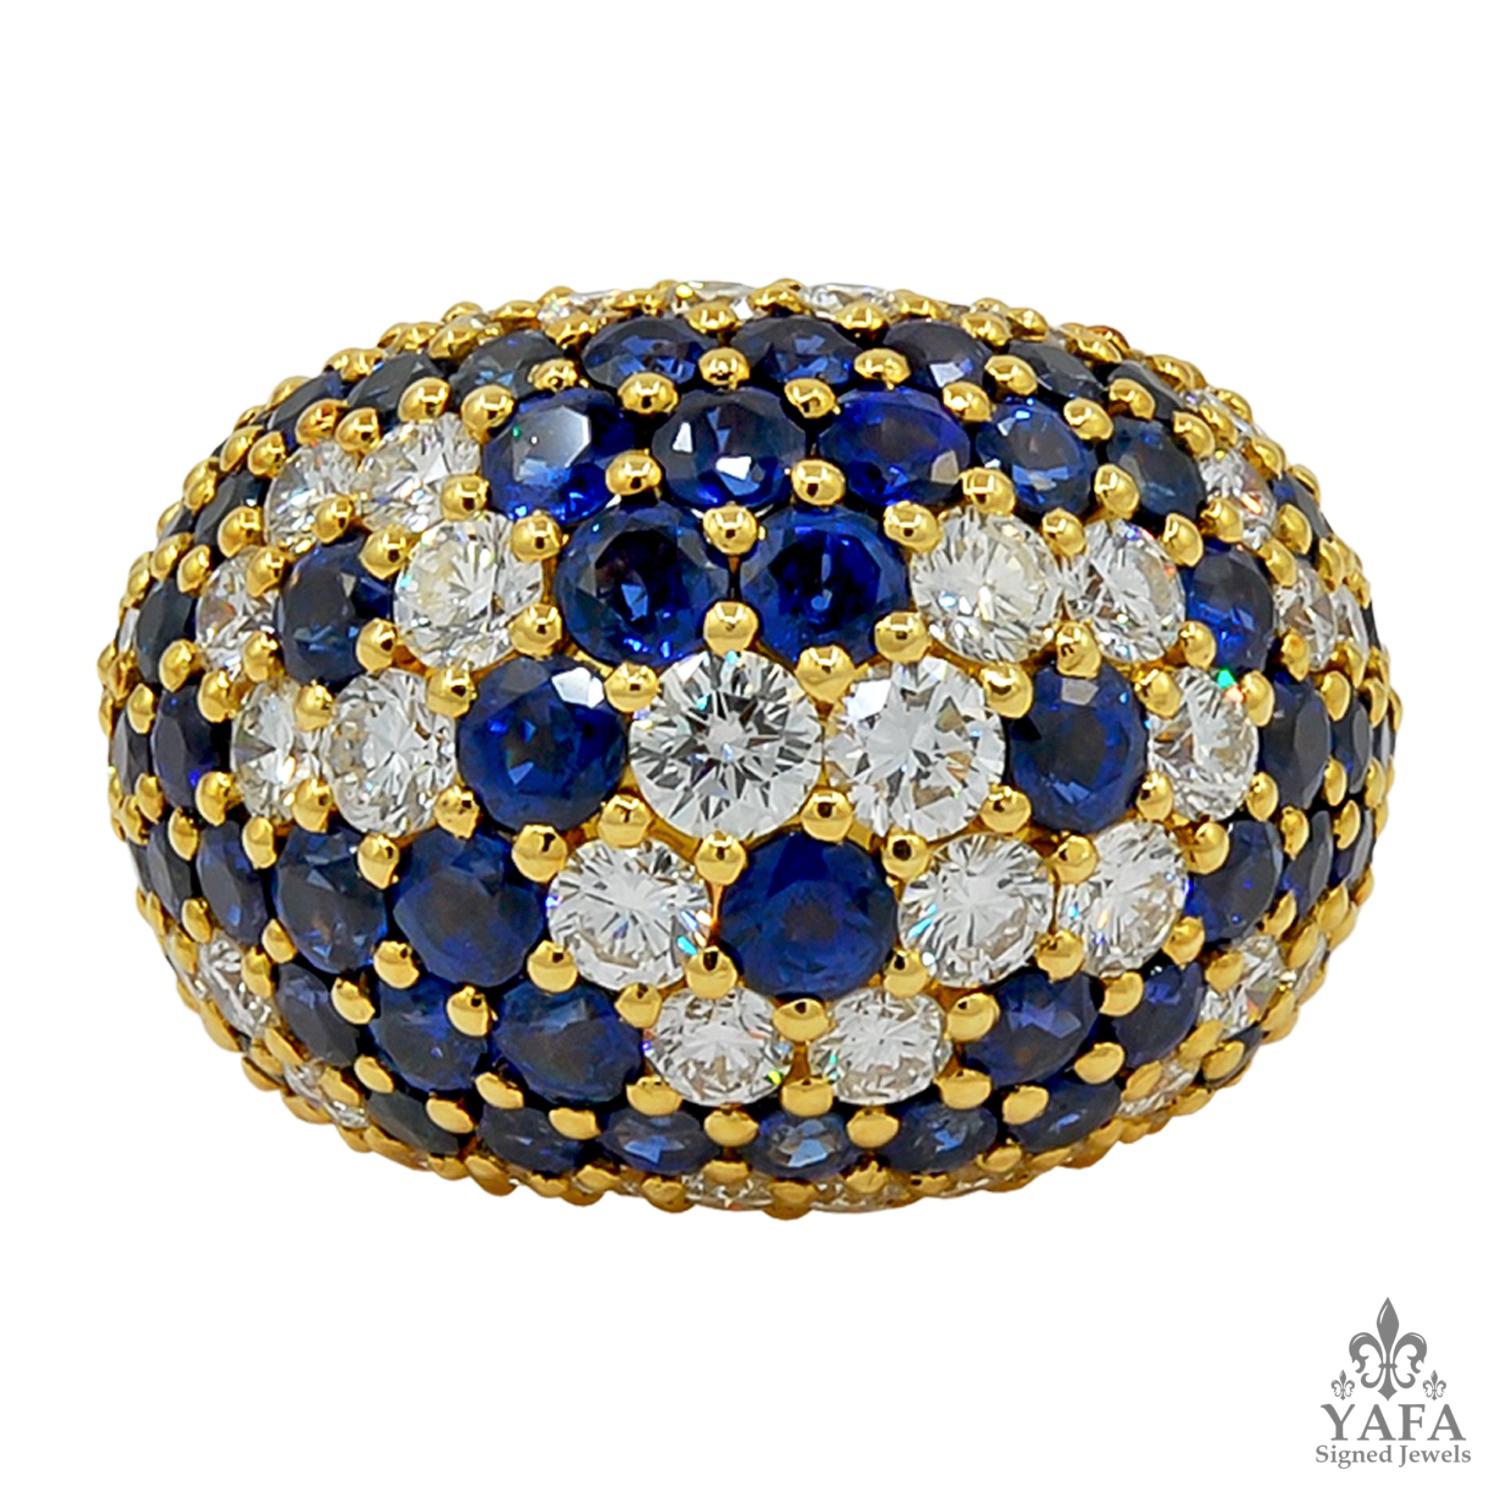 Van Cleef & Arpels Bague Vintage Diamant Saphir
Bague dôme en or jaune 18k, sertie de diamants à taille circulaire et de saphir, signée Van Cleef & Arpels, français.
taille de l'anneau - 6
Signé 